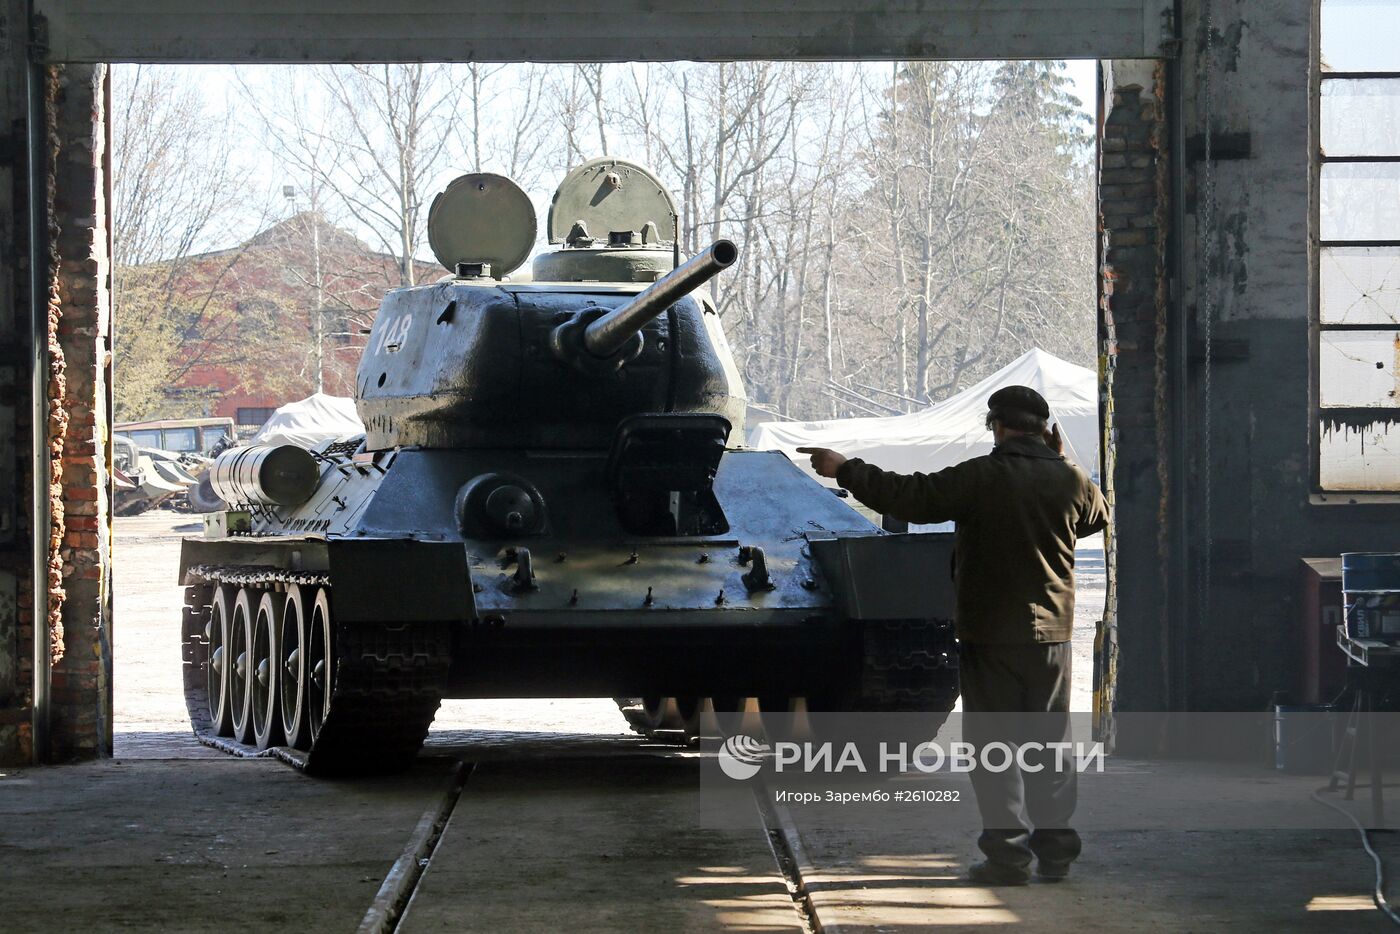 Танк Т-34, штурмовавший Кенигсберг, отремонтировали к Параду Победы